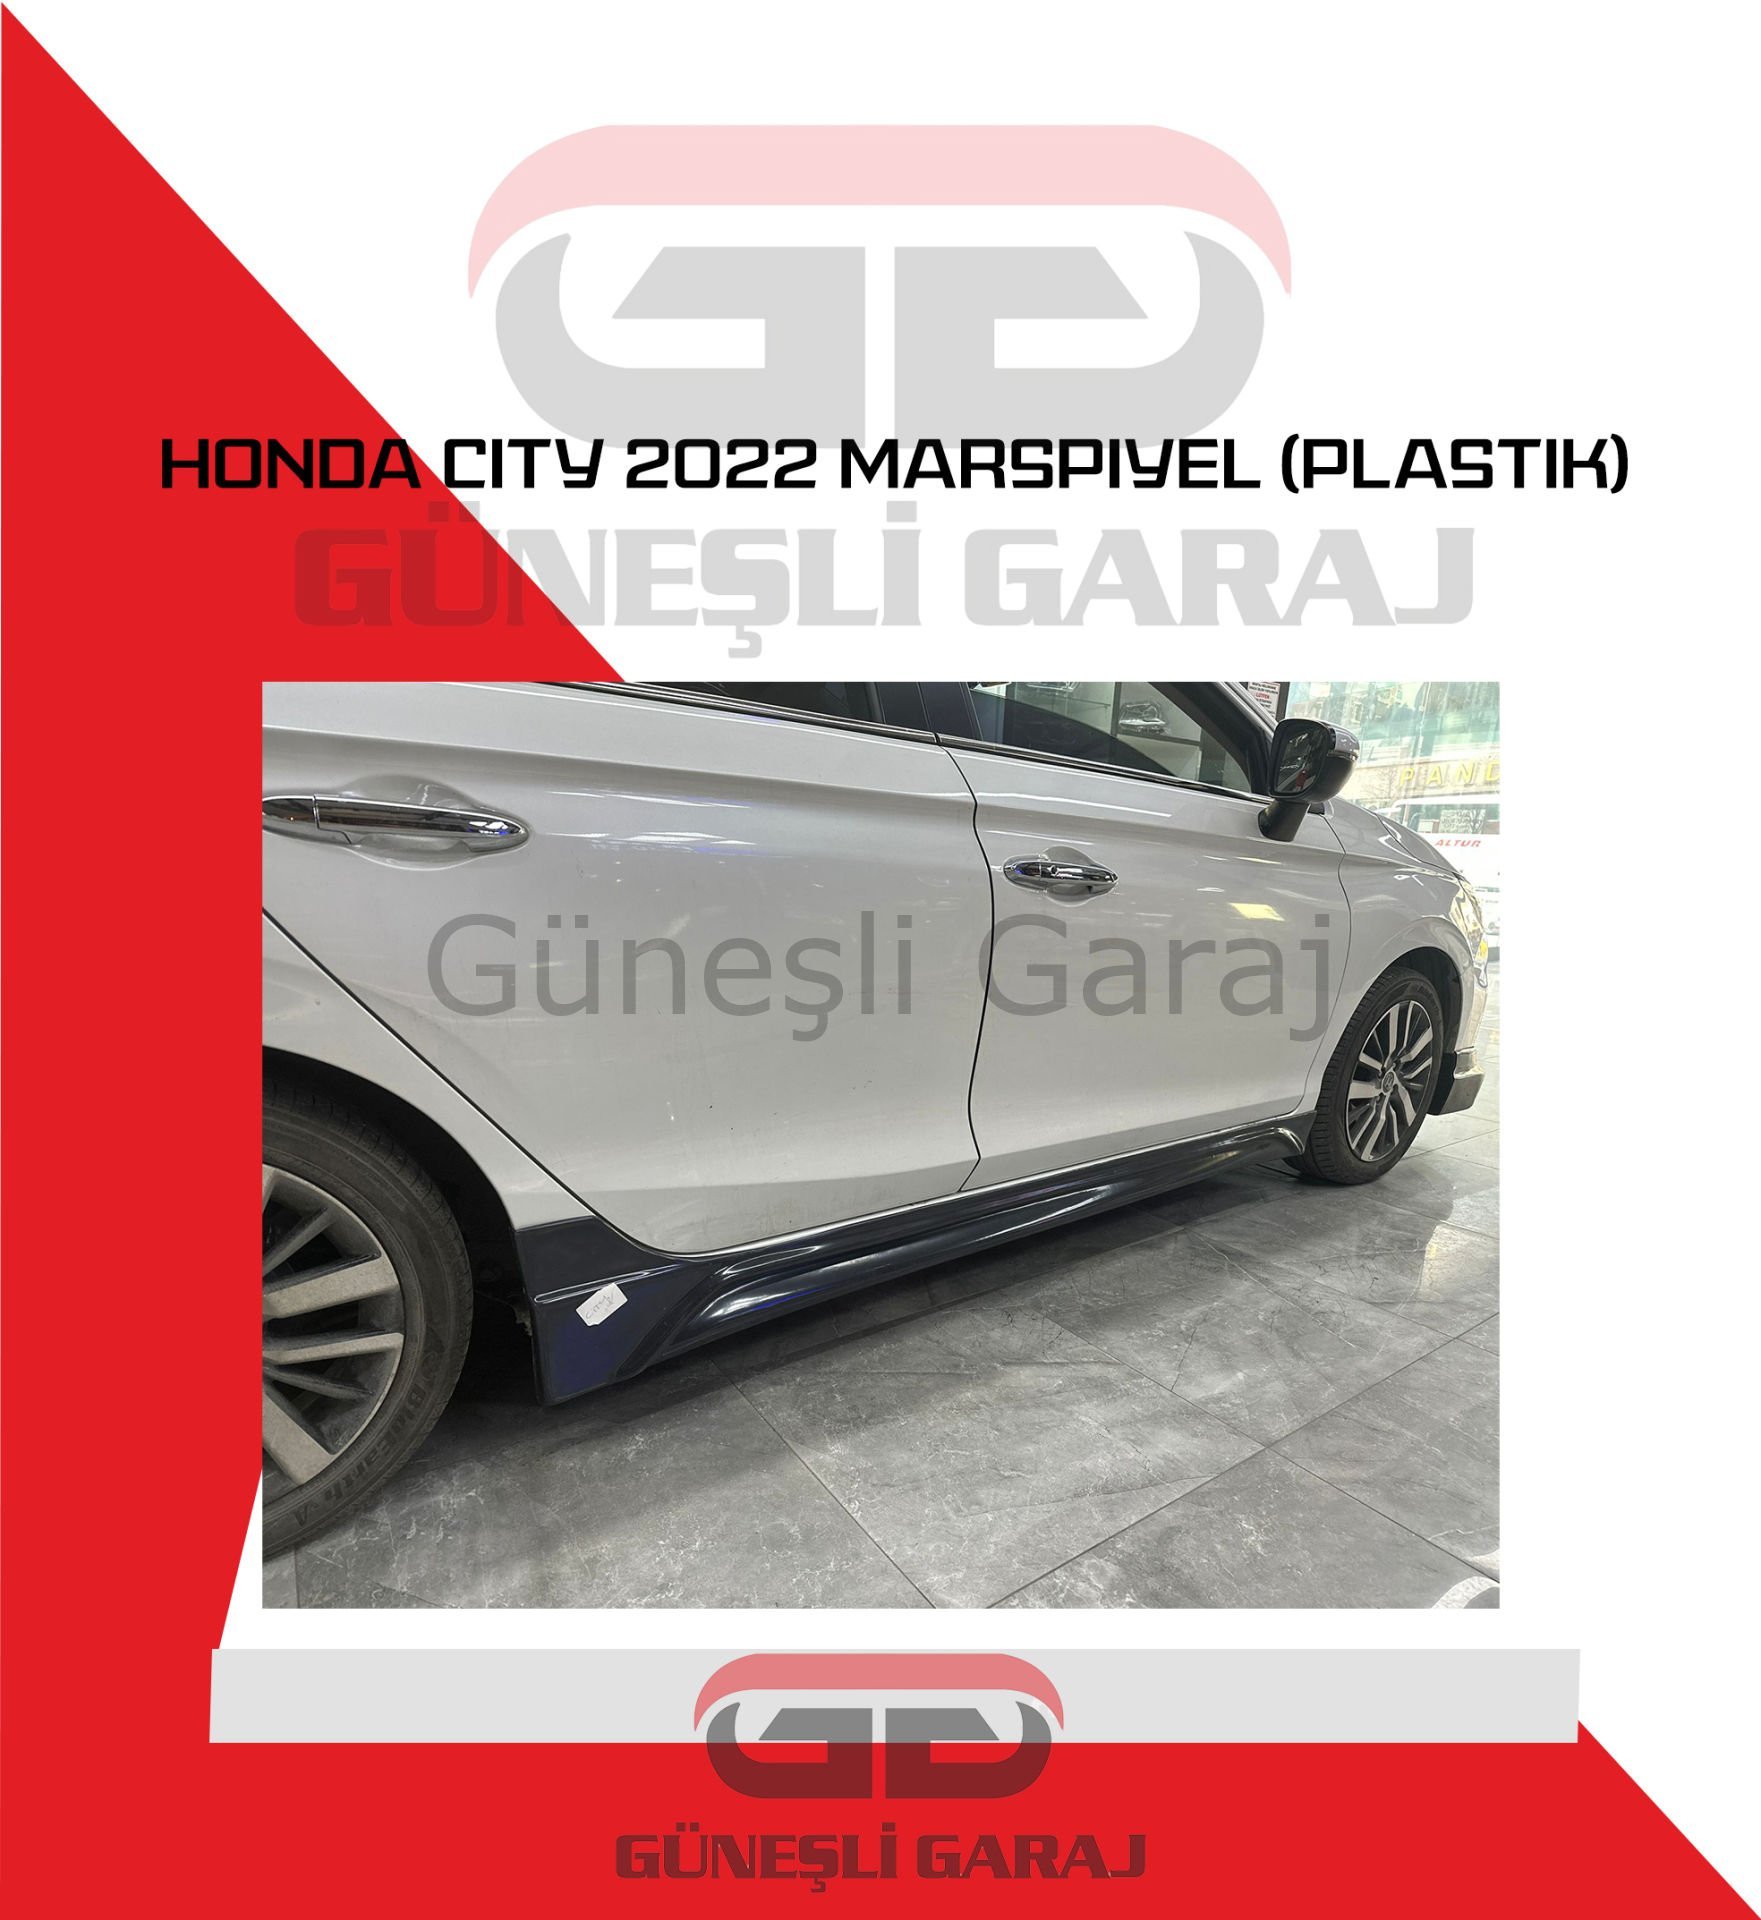 Honda City 2022 Yan Marşpiyel (Plastik)